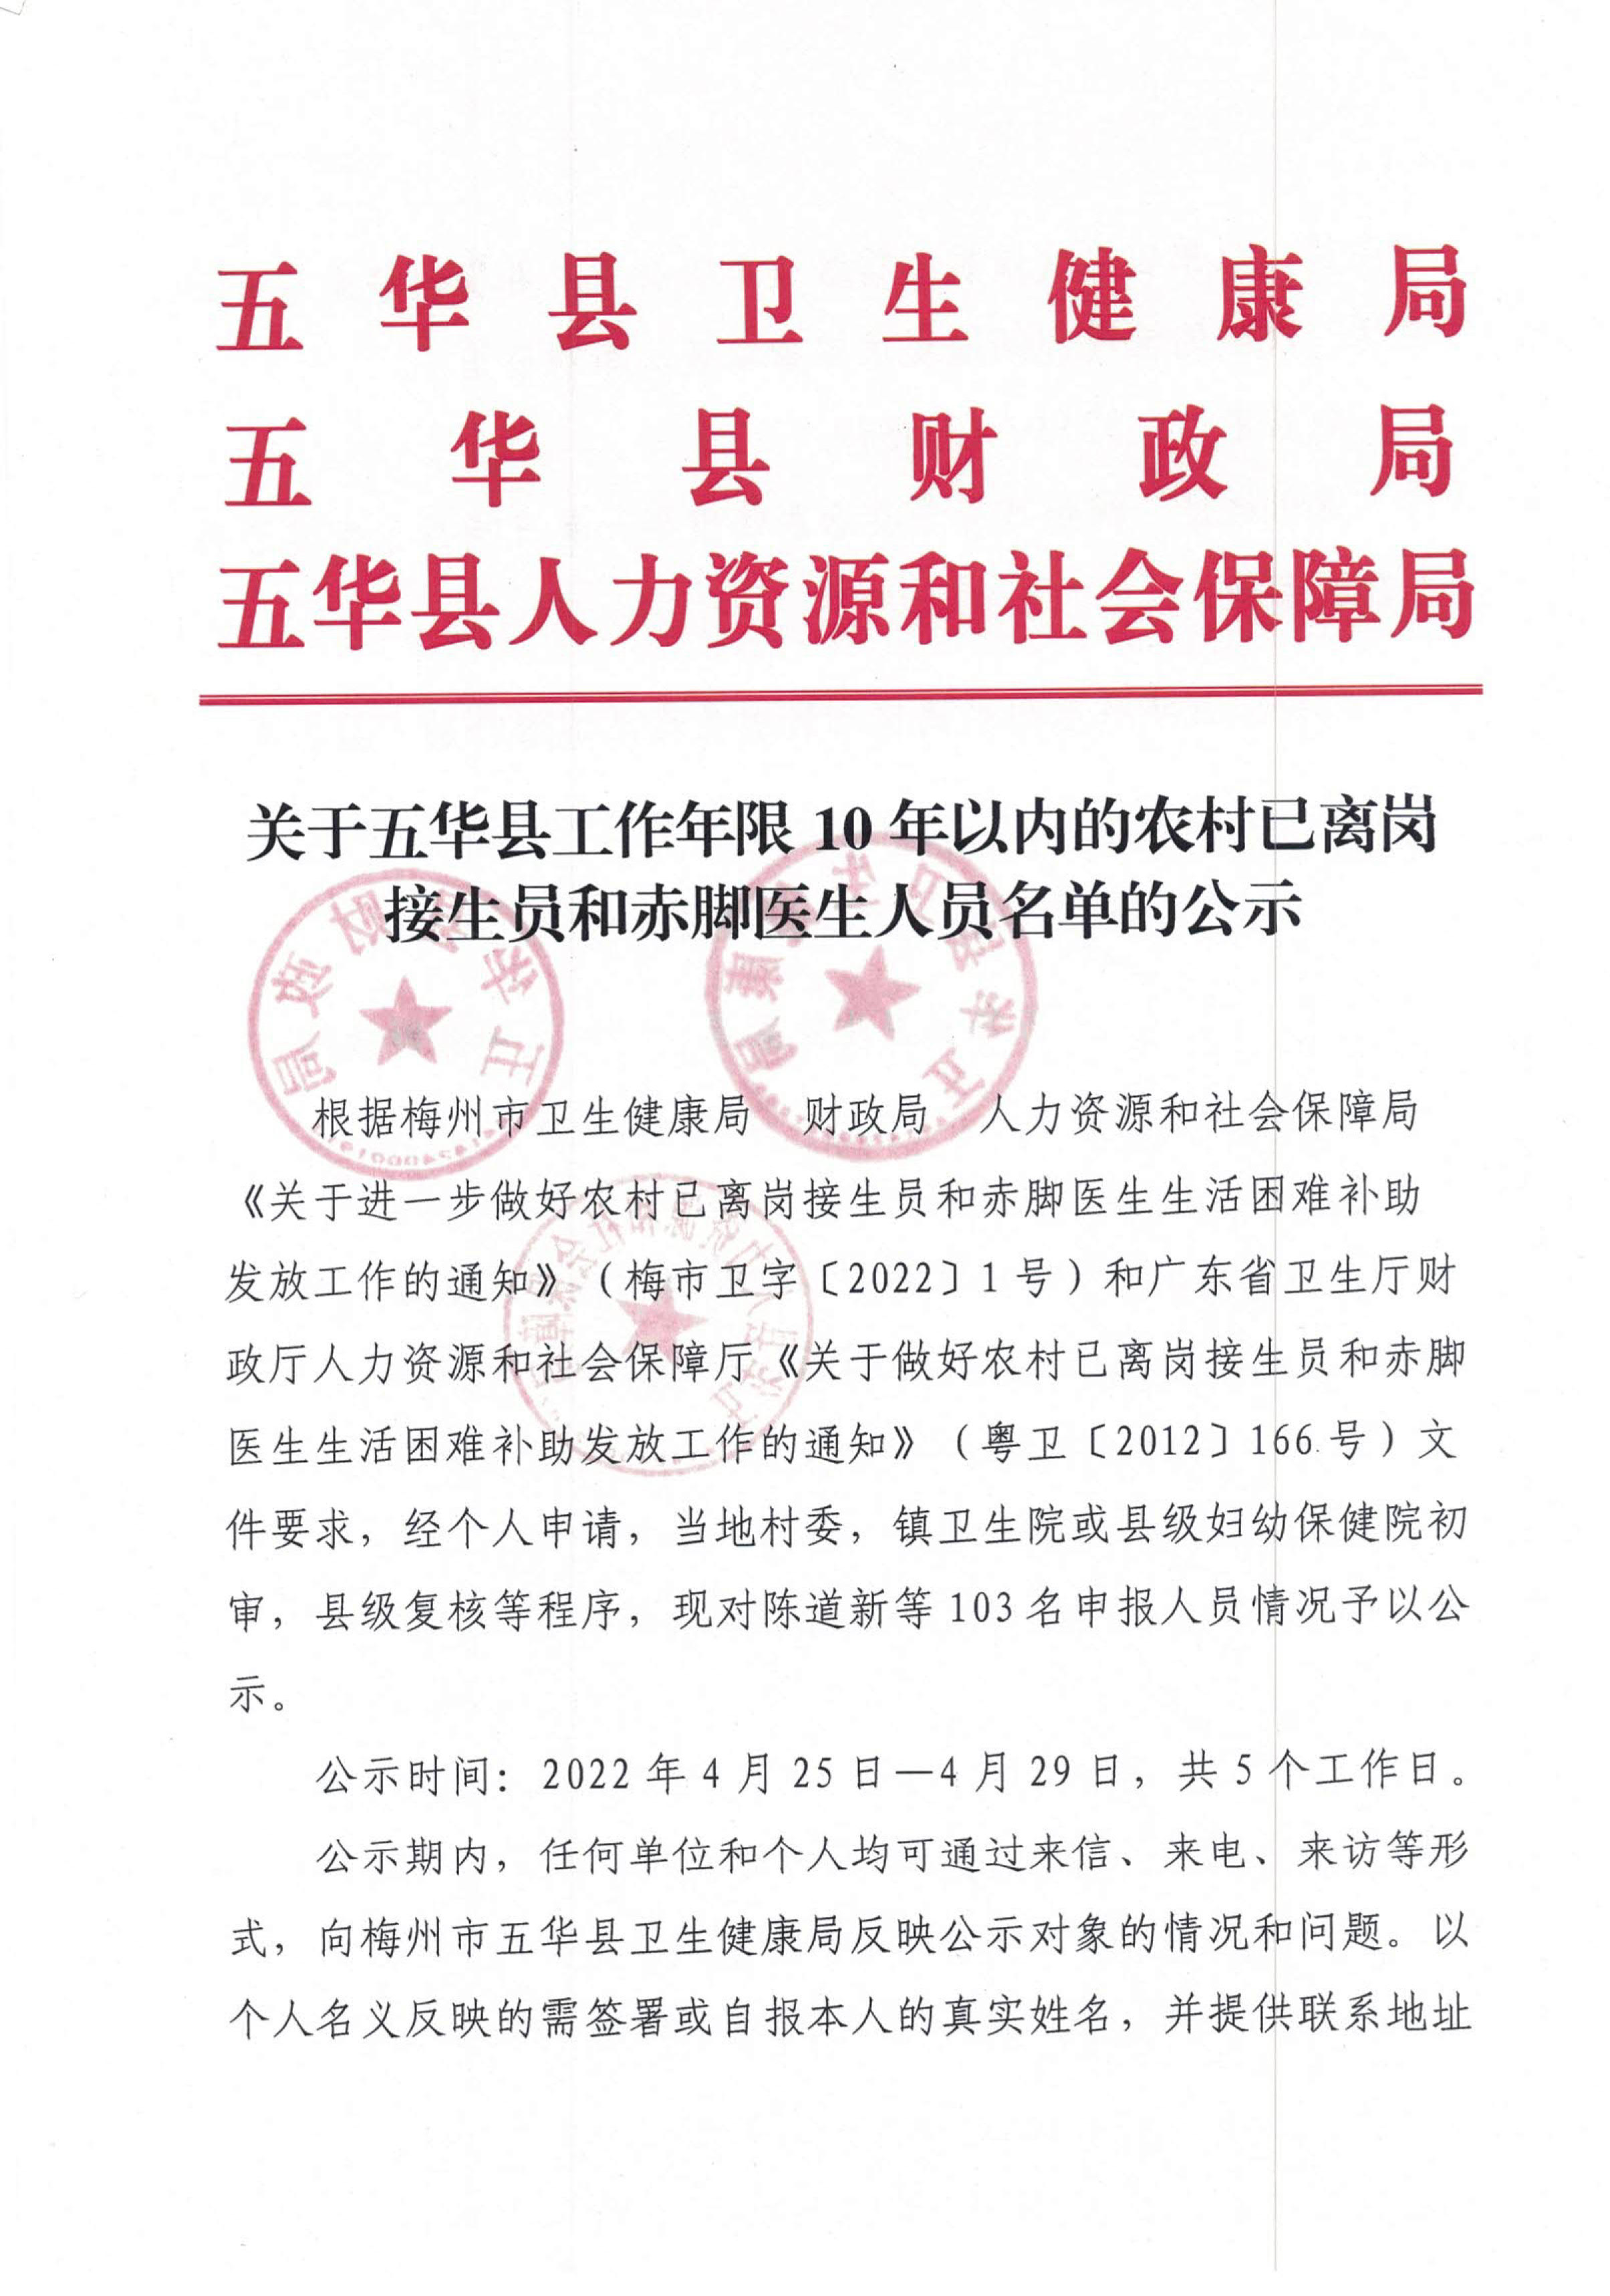 关于五华县工作年限10年以内的农村已离岗接生员和赤脚医生人员名单的公示(1)_1.jpg